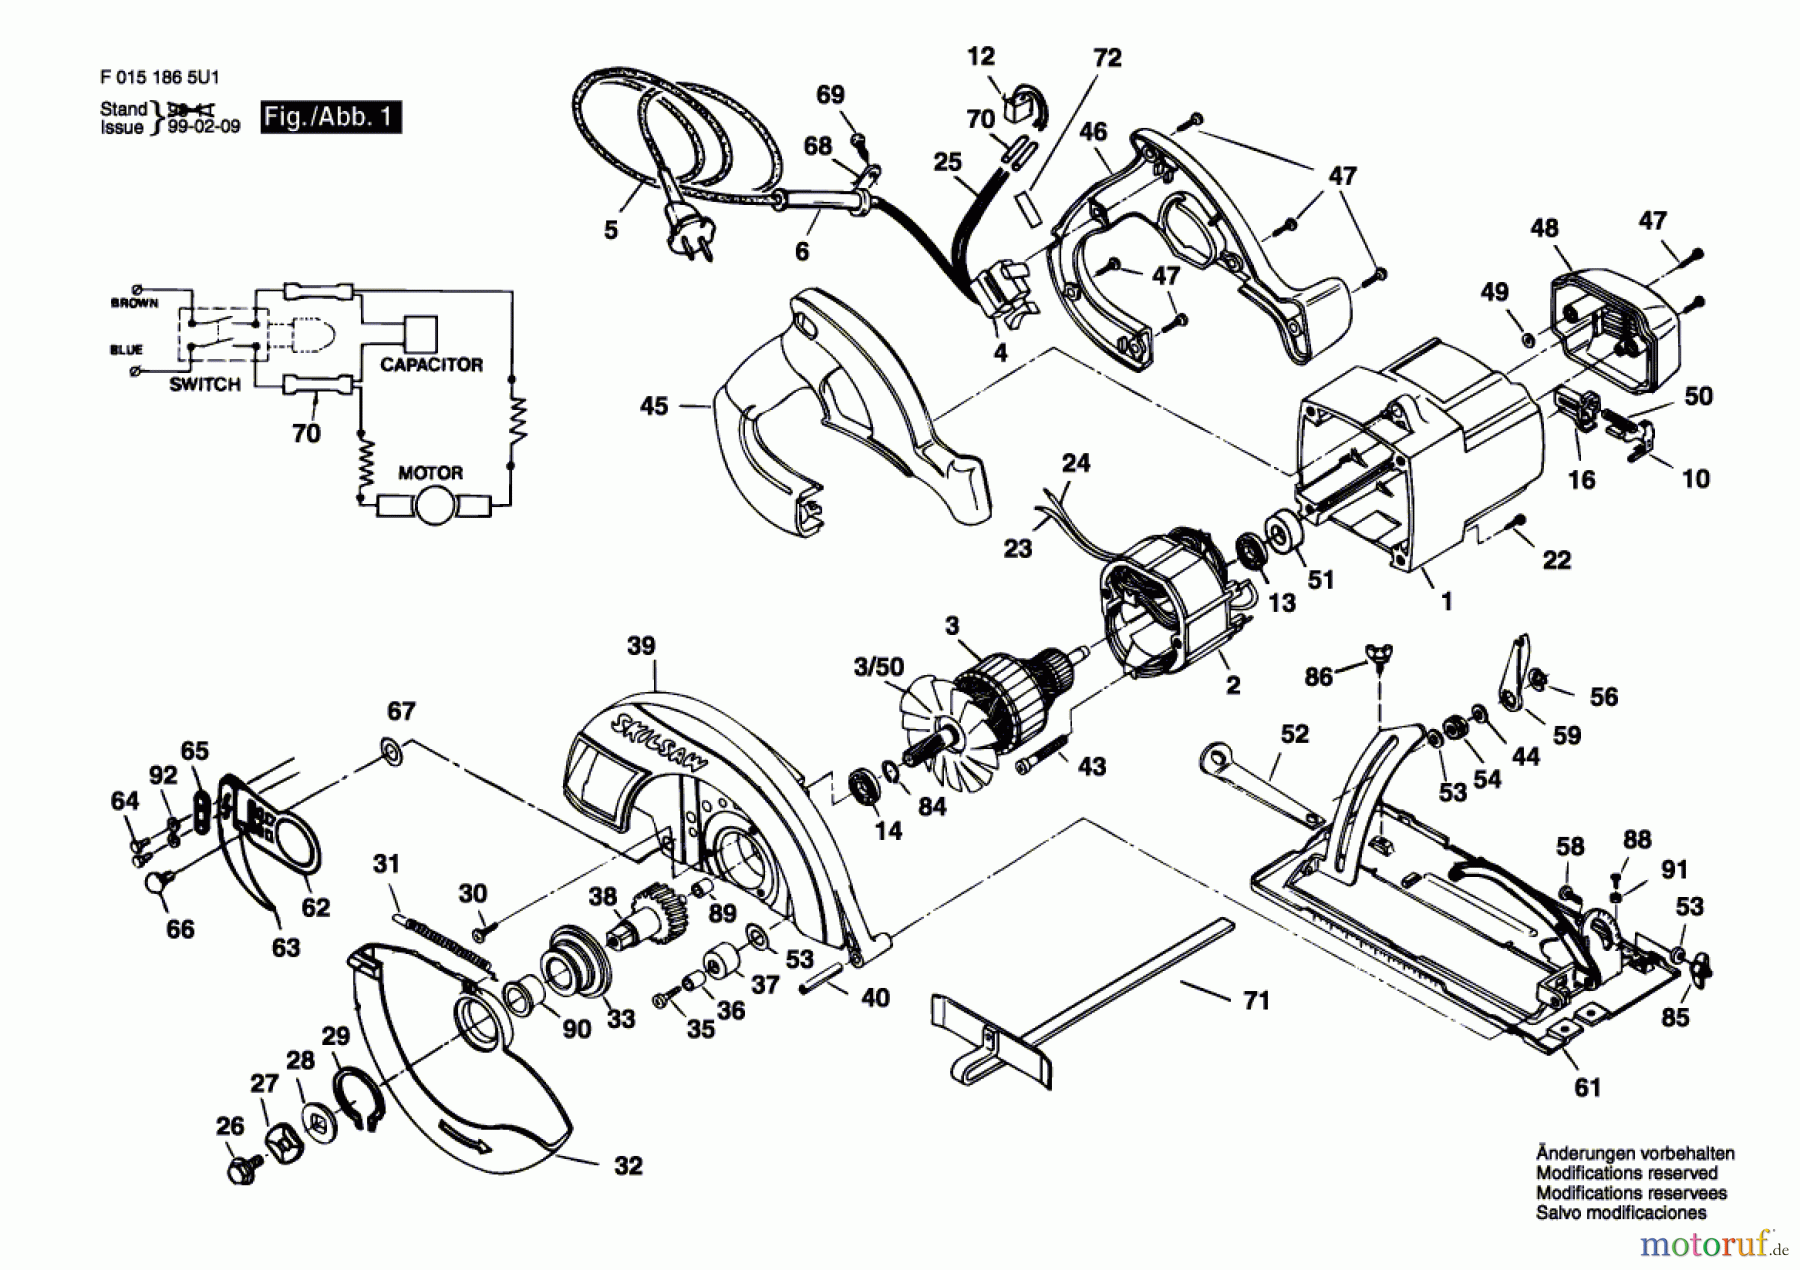  Bosch Werkzeug Handkreissäge 1865U1 Seite 1